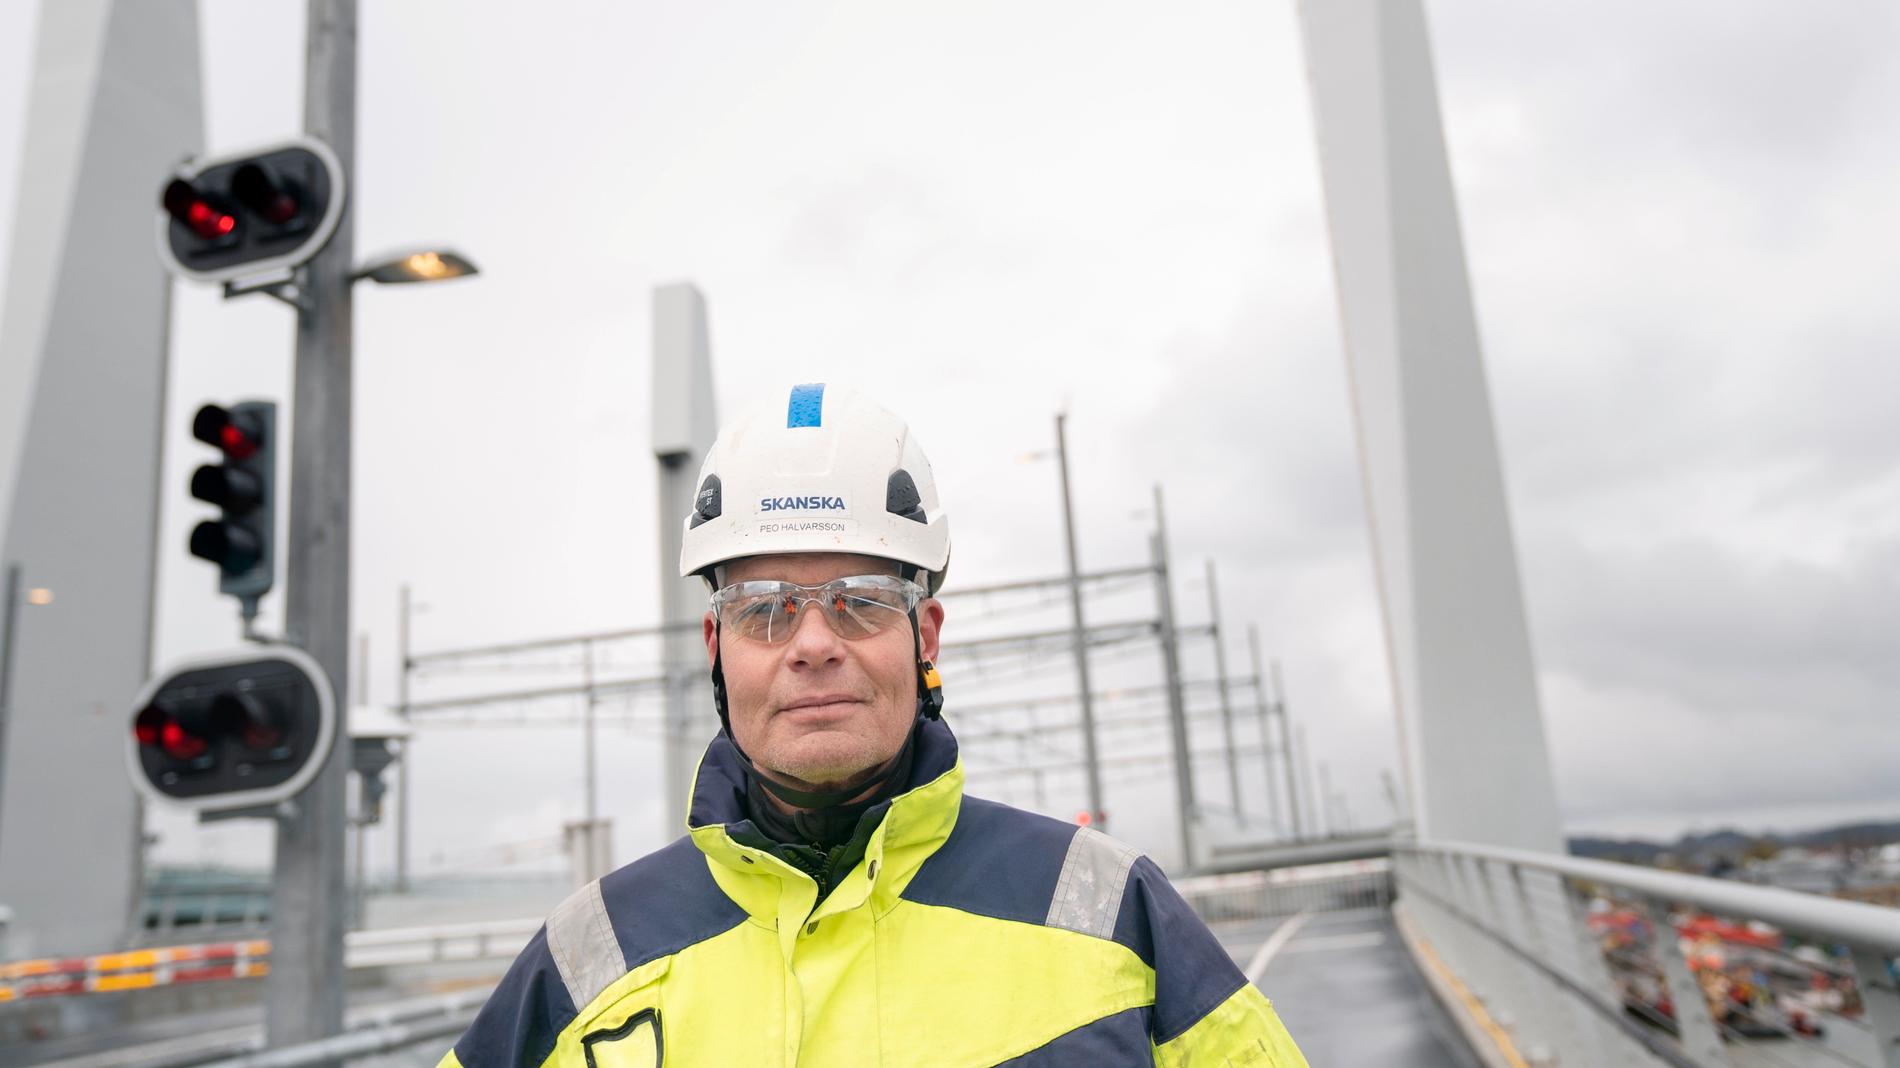 Peo Halvarsson från Örnsköldsvik är Skanskas produktionschef på bygget av Hisingsbron. "Den ser jäkligt bra ut", säger han om bron med fyra höga pyloner vid lyftspannet som landmärke.